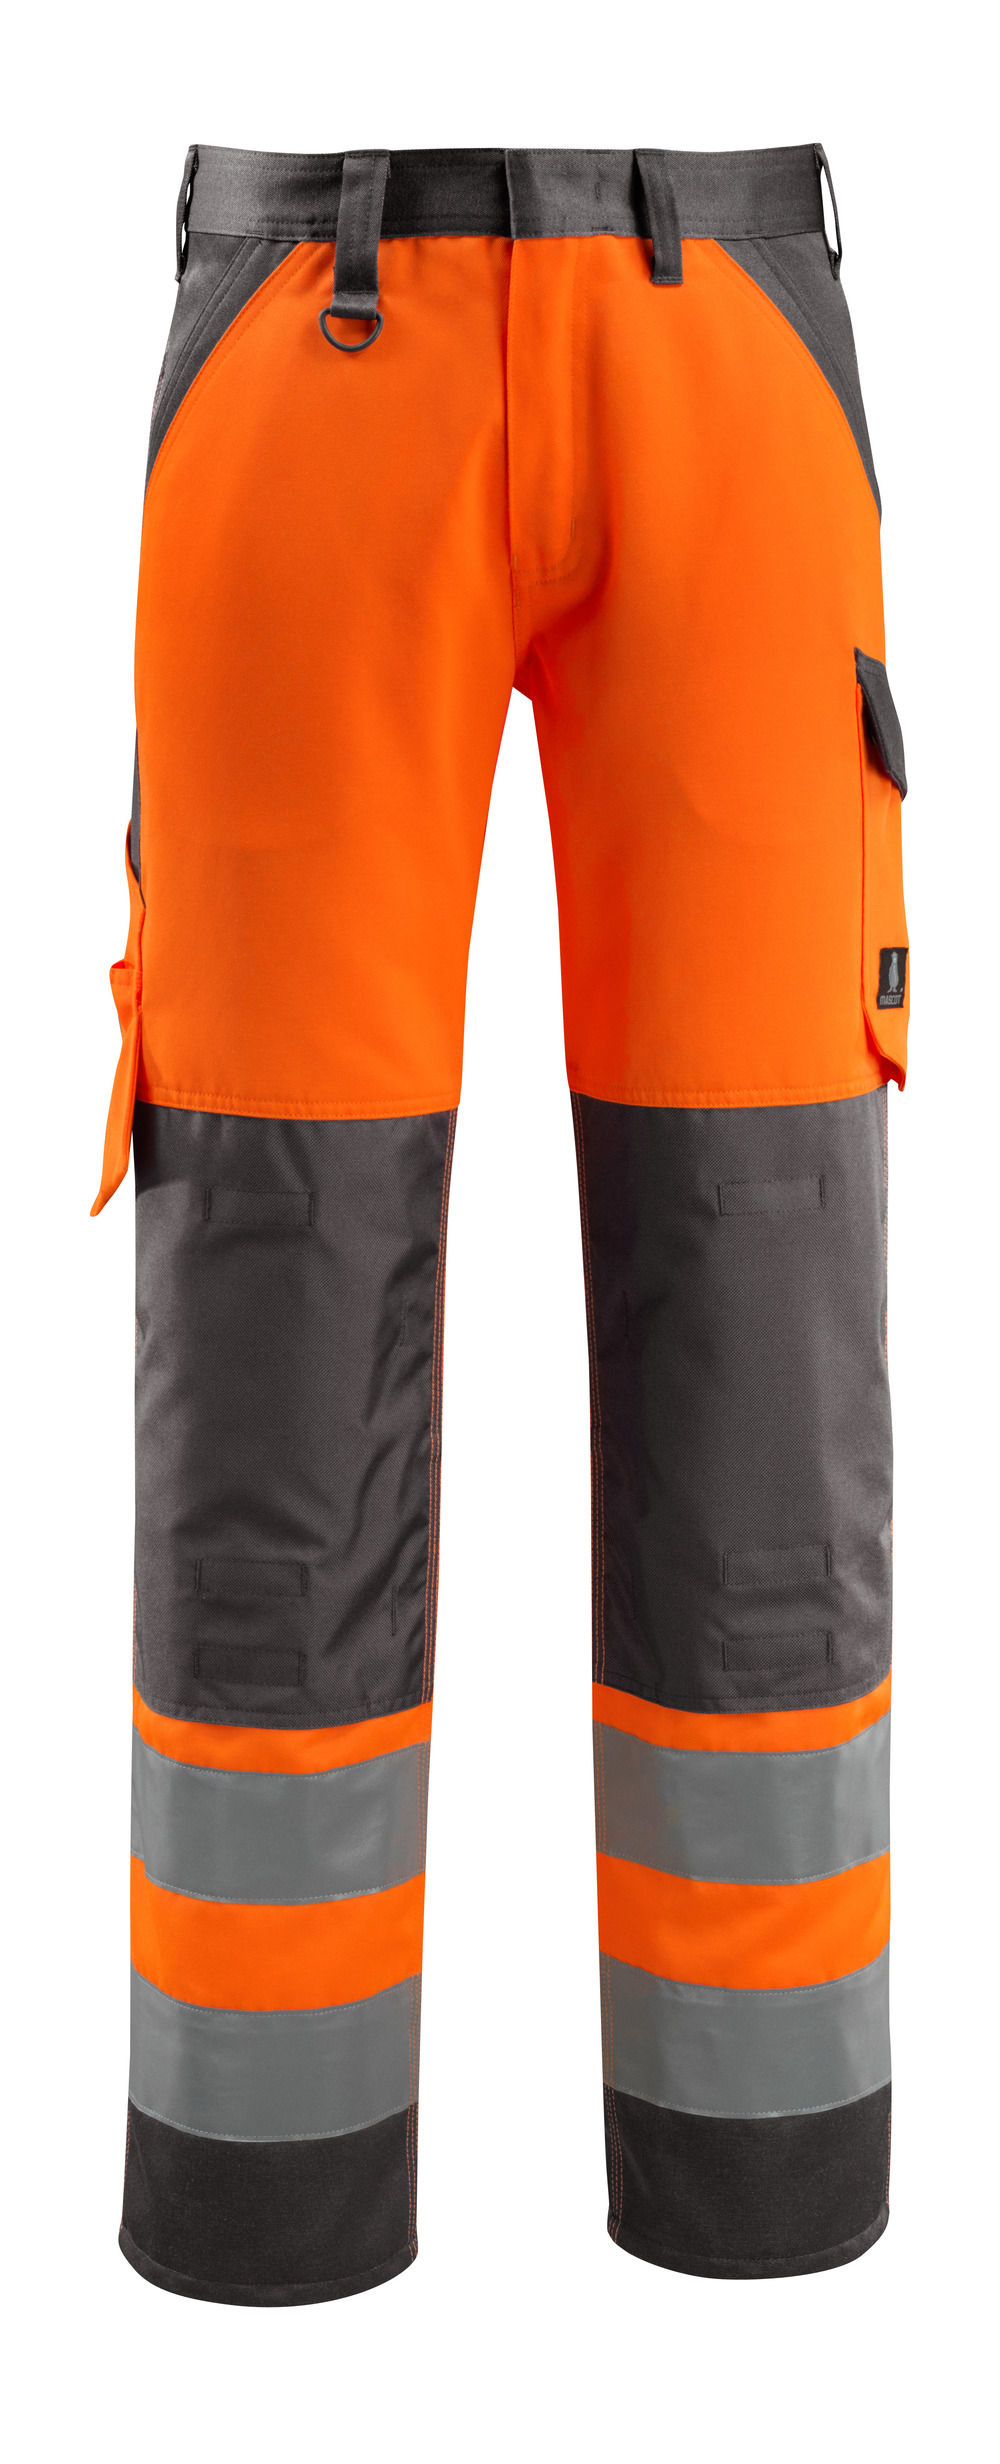 MASCOT-Warnschutz, Warn-Bund-Hose, Maitland,  82 cm, 285 g/m², orange/dunkelanthrazit

